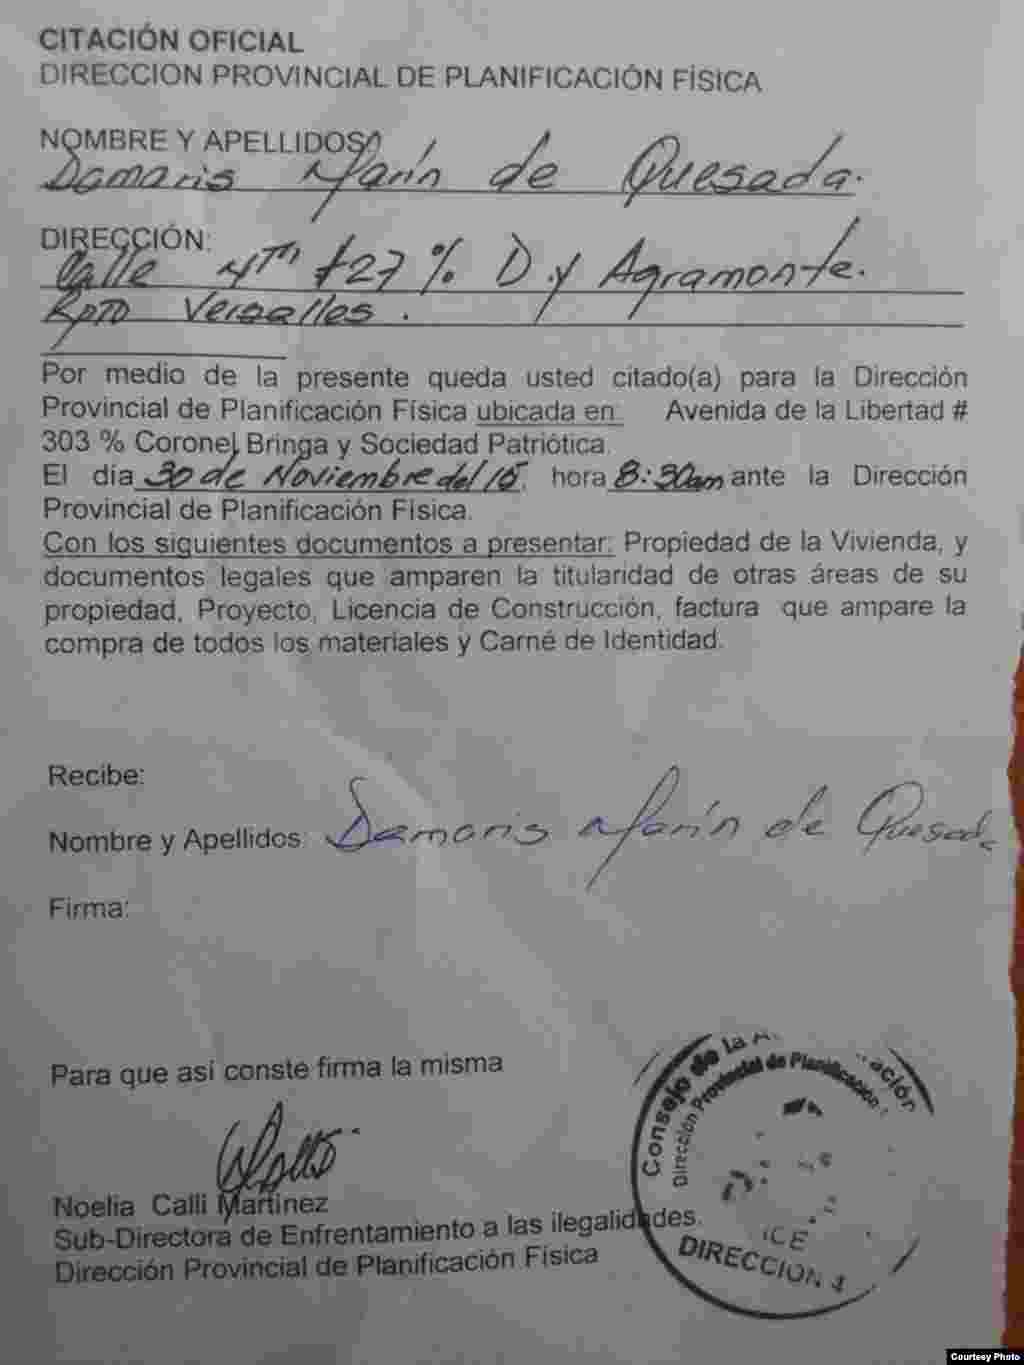 Documento expedido por el departamento de Planificación Física en Camagüey a Damaris de Quesada para que se presente con los documentos debidos, referentes a la construcción del techo en su propiedad.